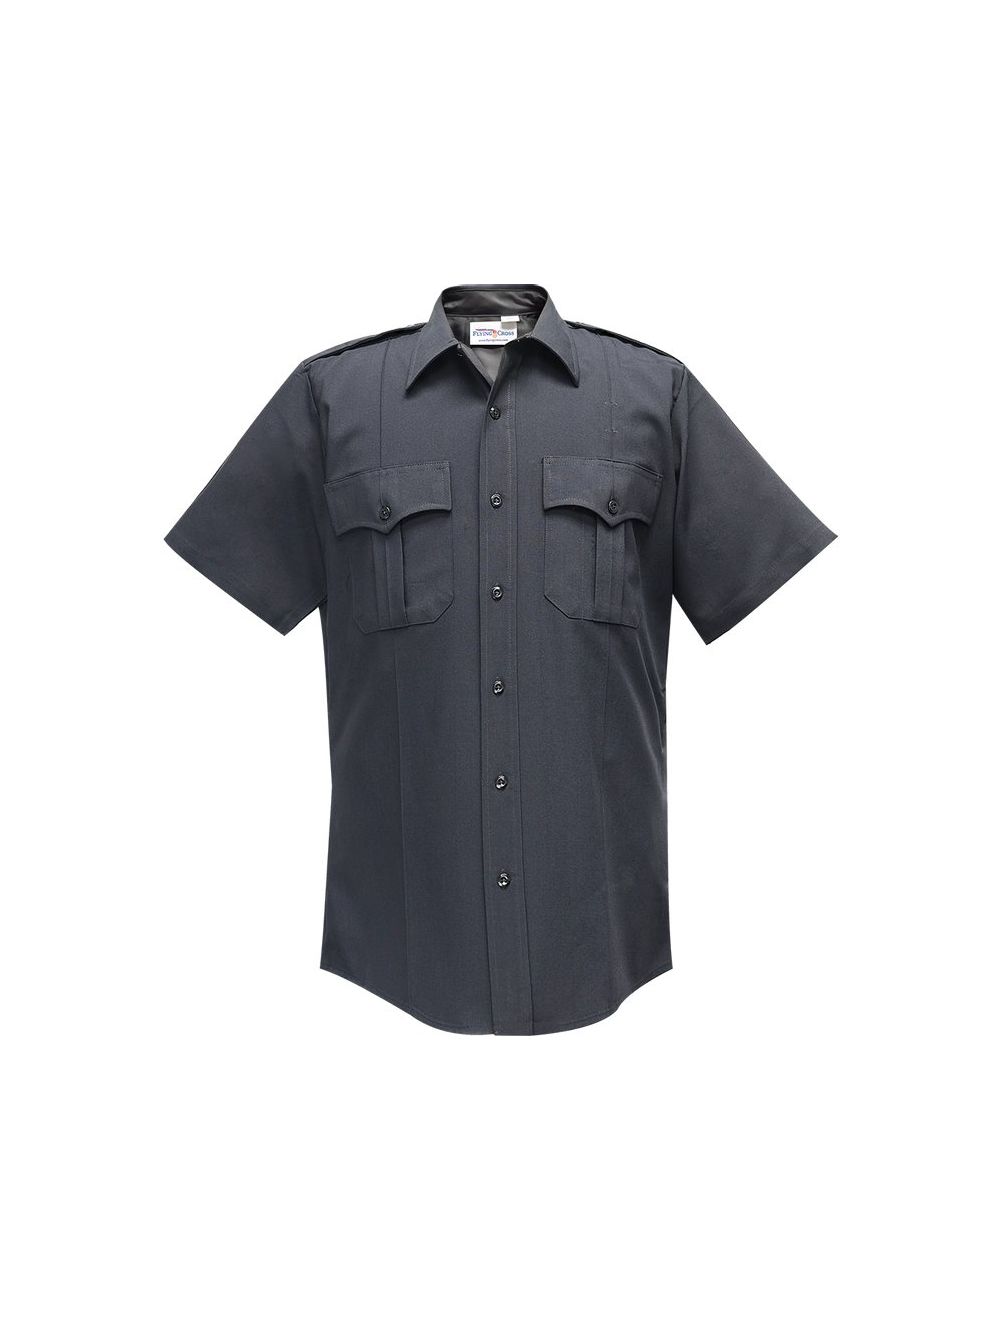 Command Short Sleeve Shirt w/ Zipper